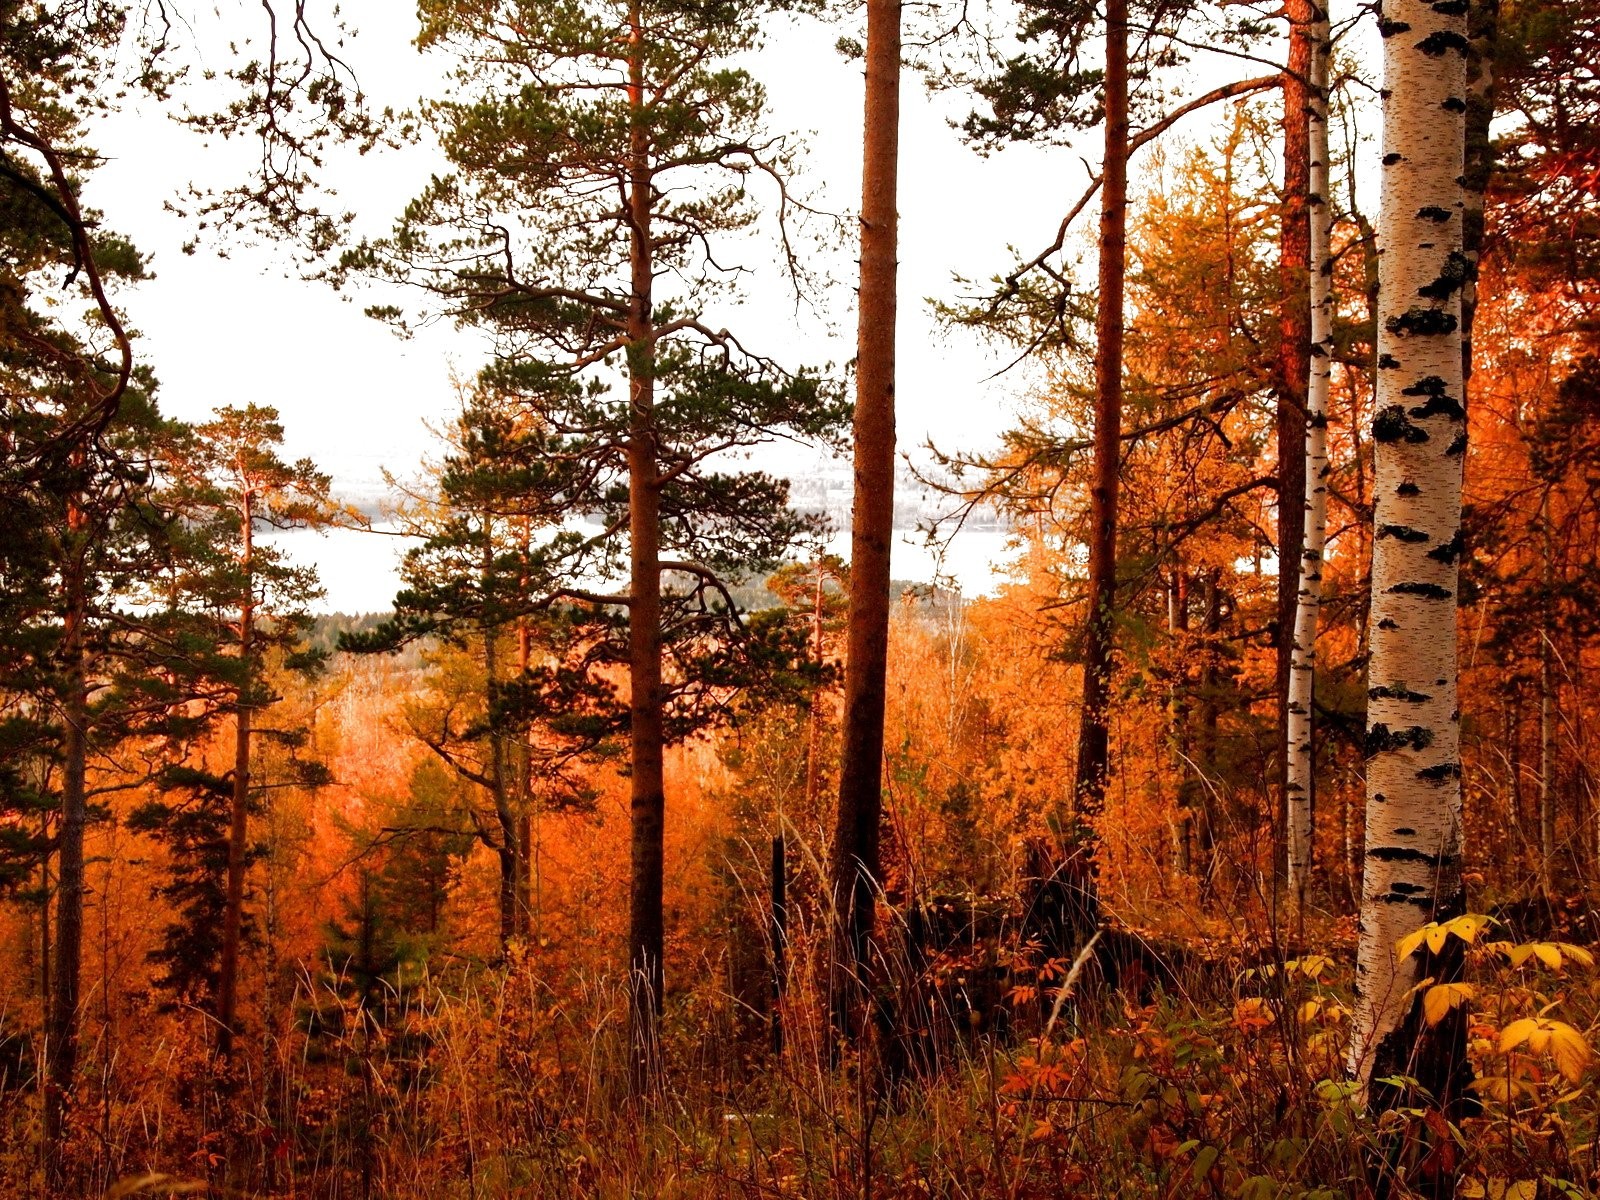 Spruce-fir Forest - HD Wallpaper 